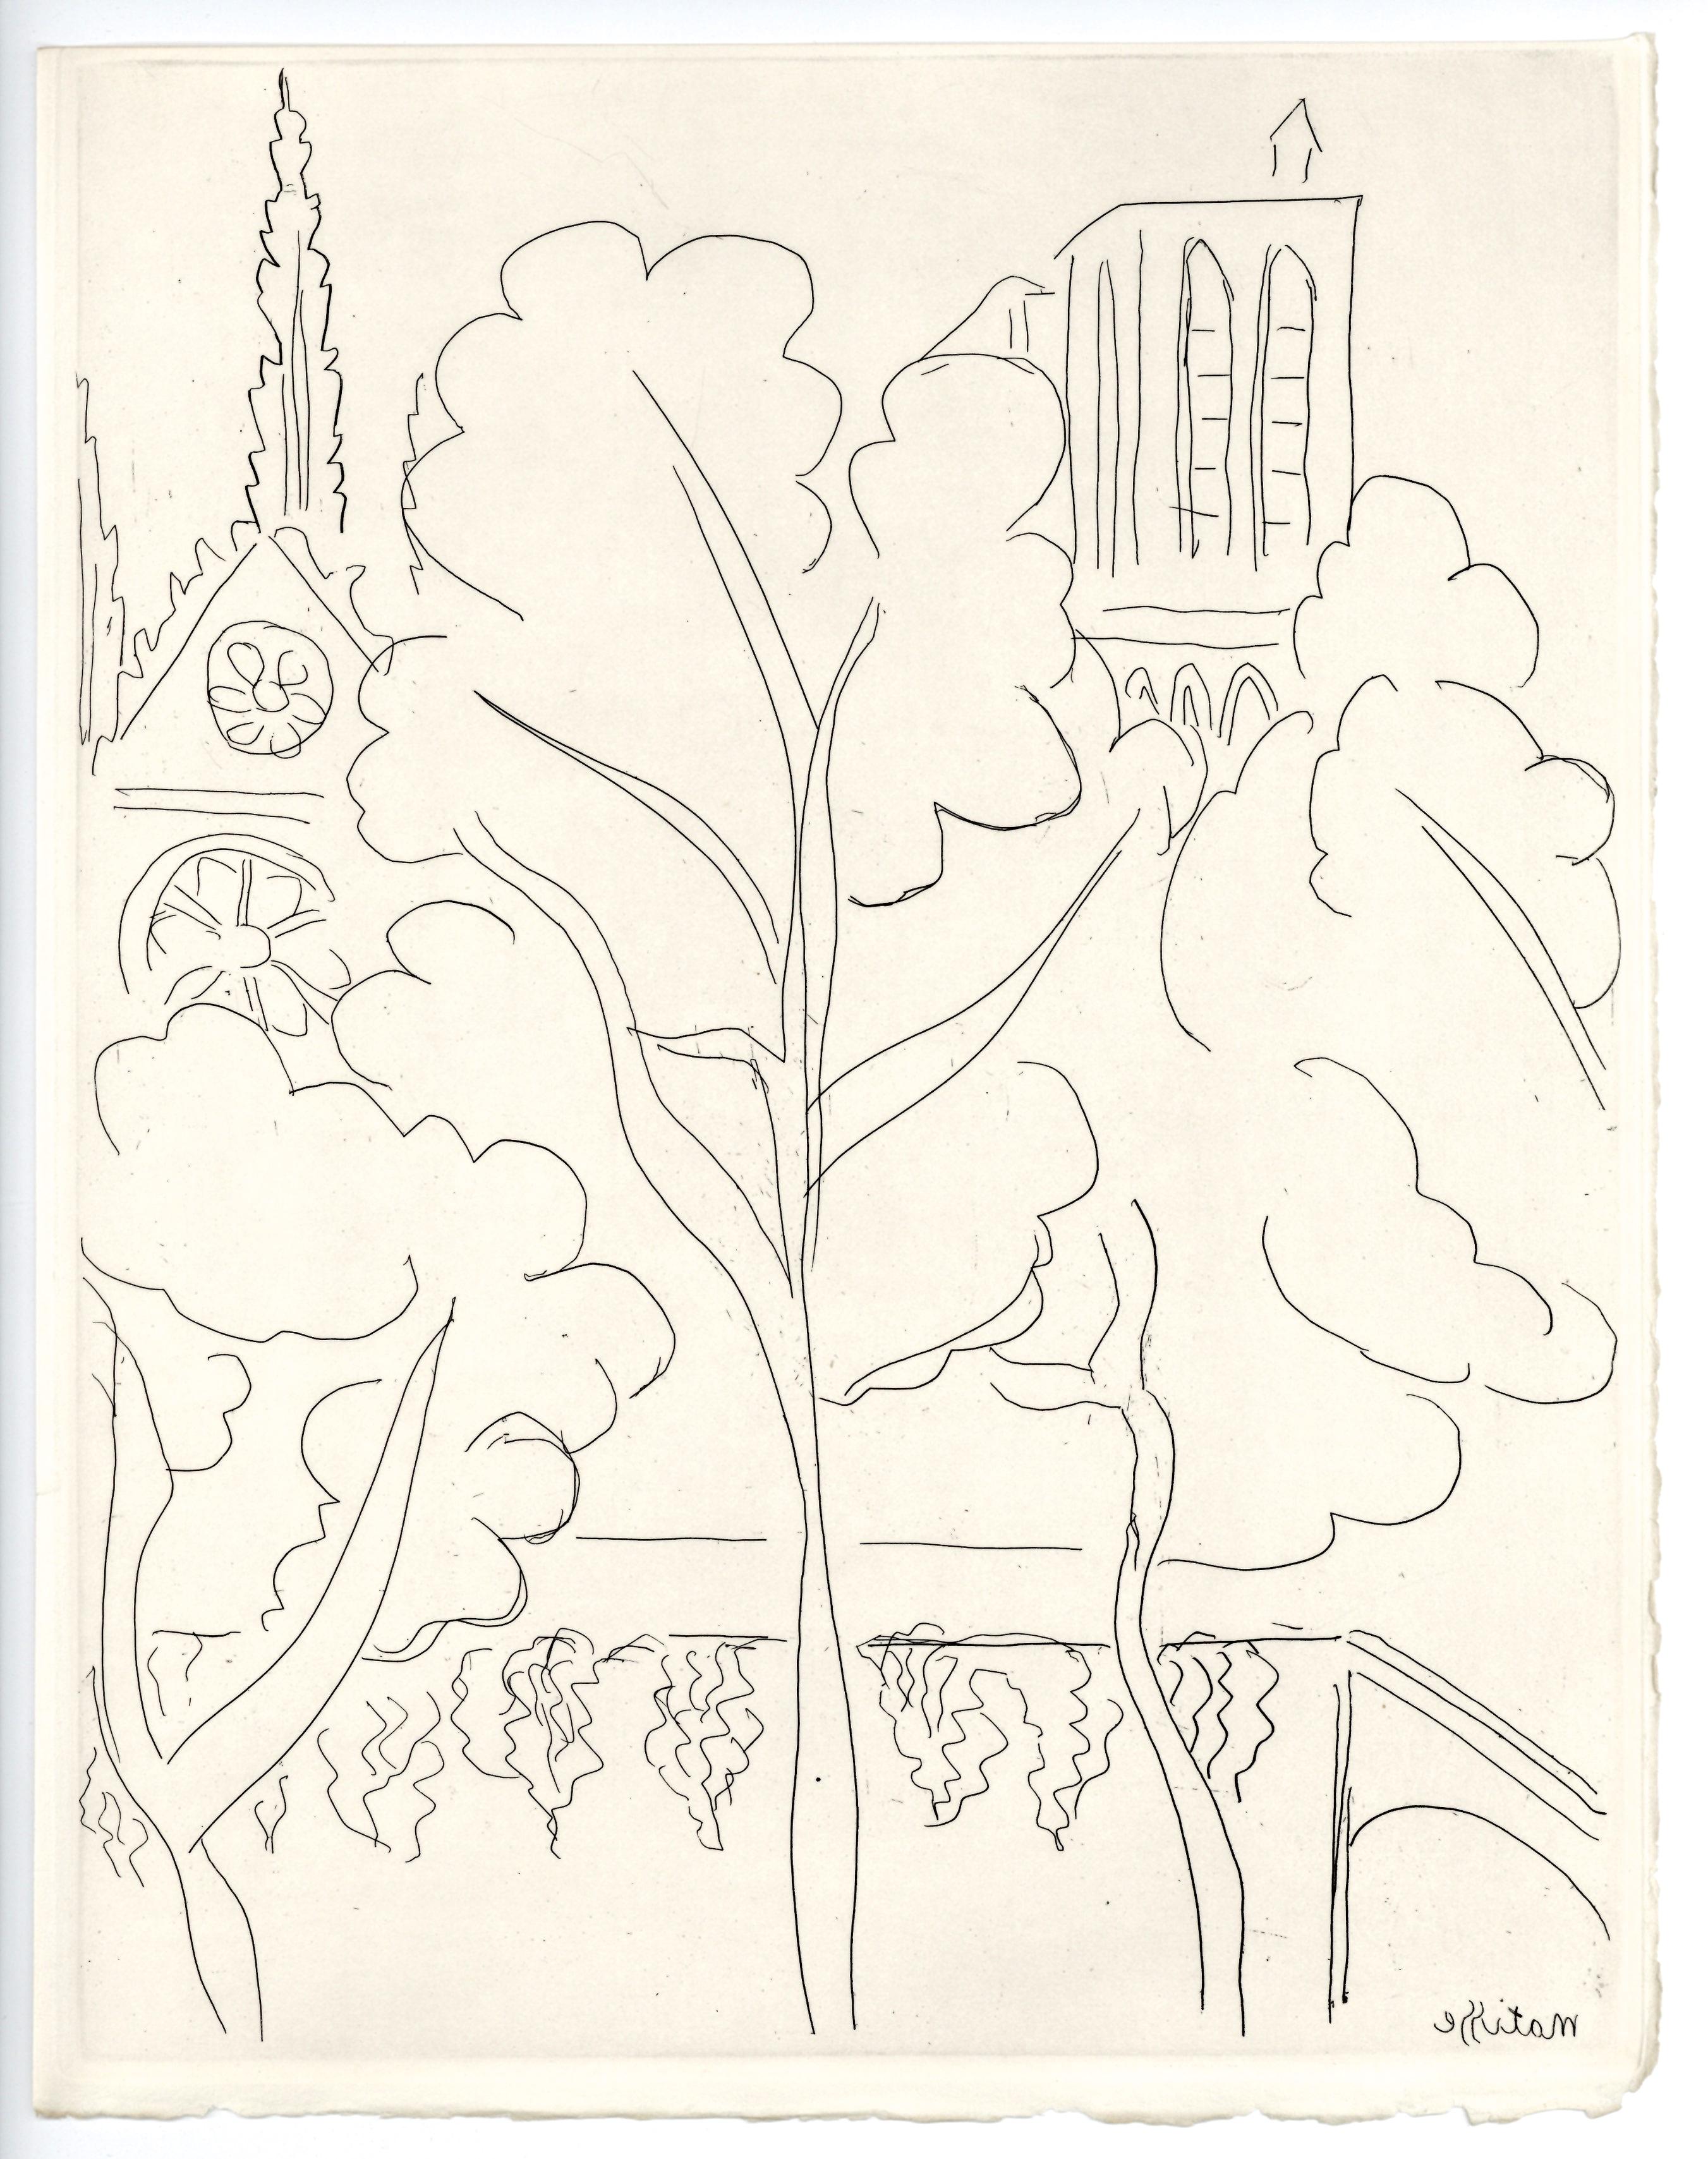 "La Cité - Notre Dame" original etching